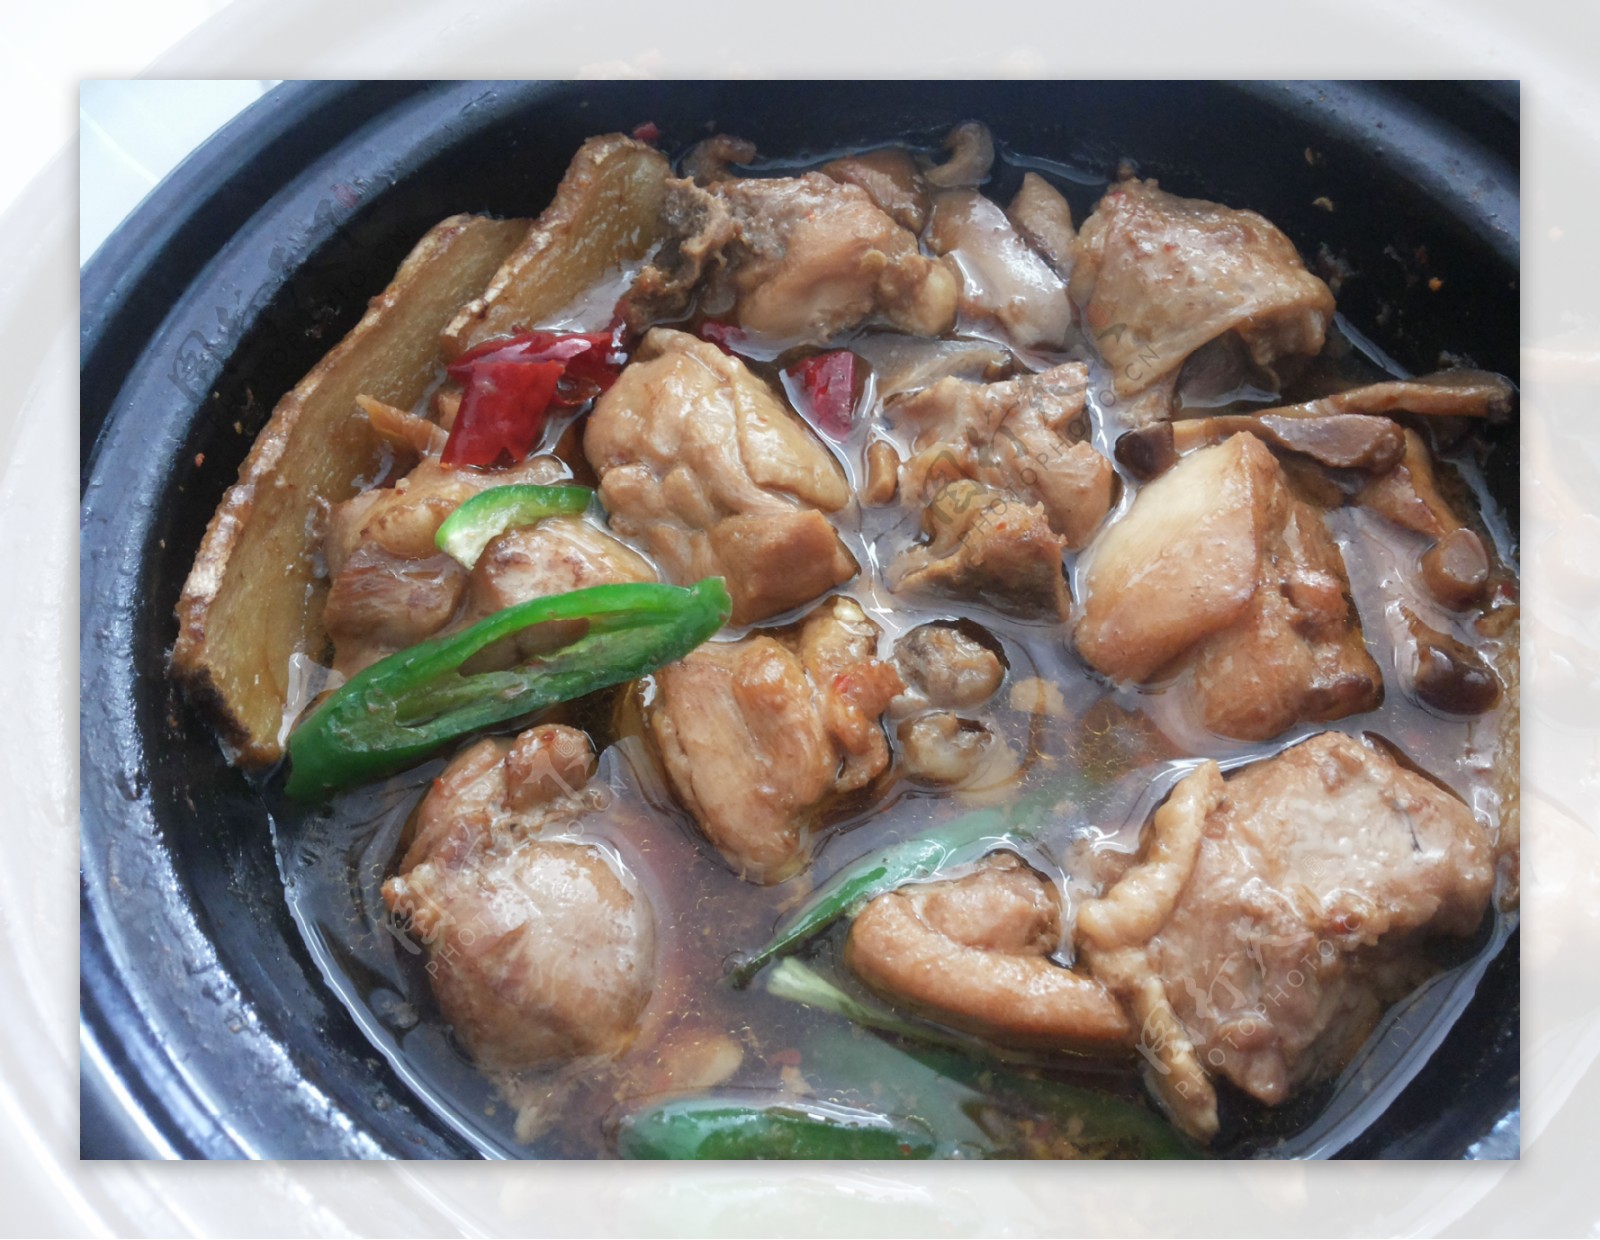 砂锅黄焖鸡怎么做_砂锅黄焖鸡的做法_豆果美食